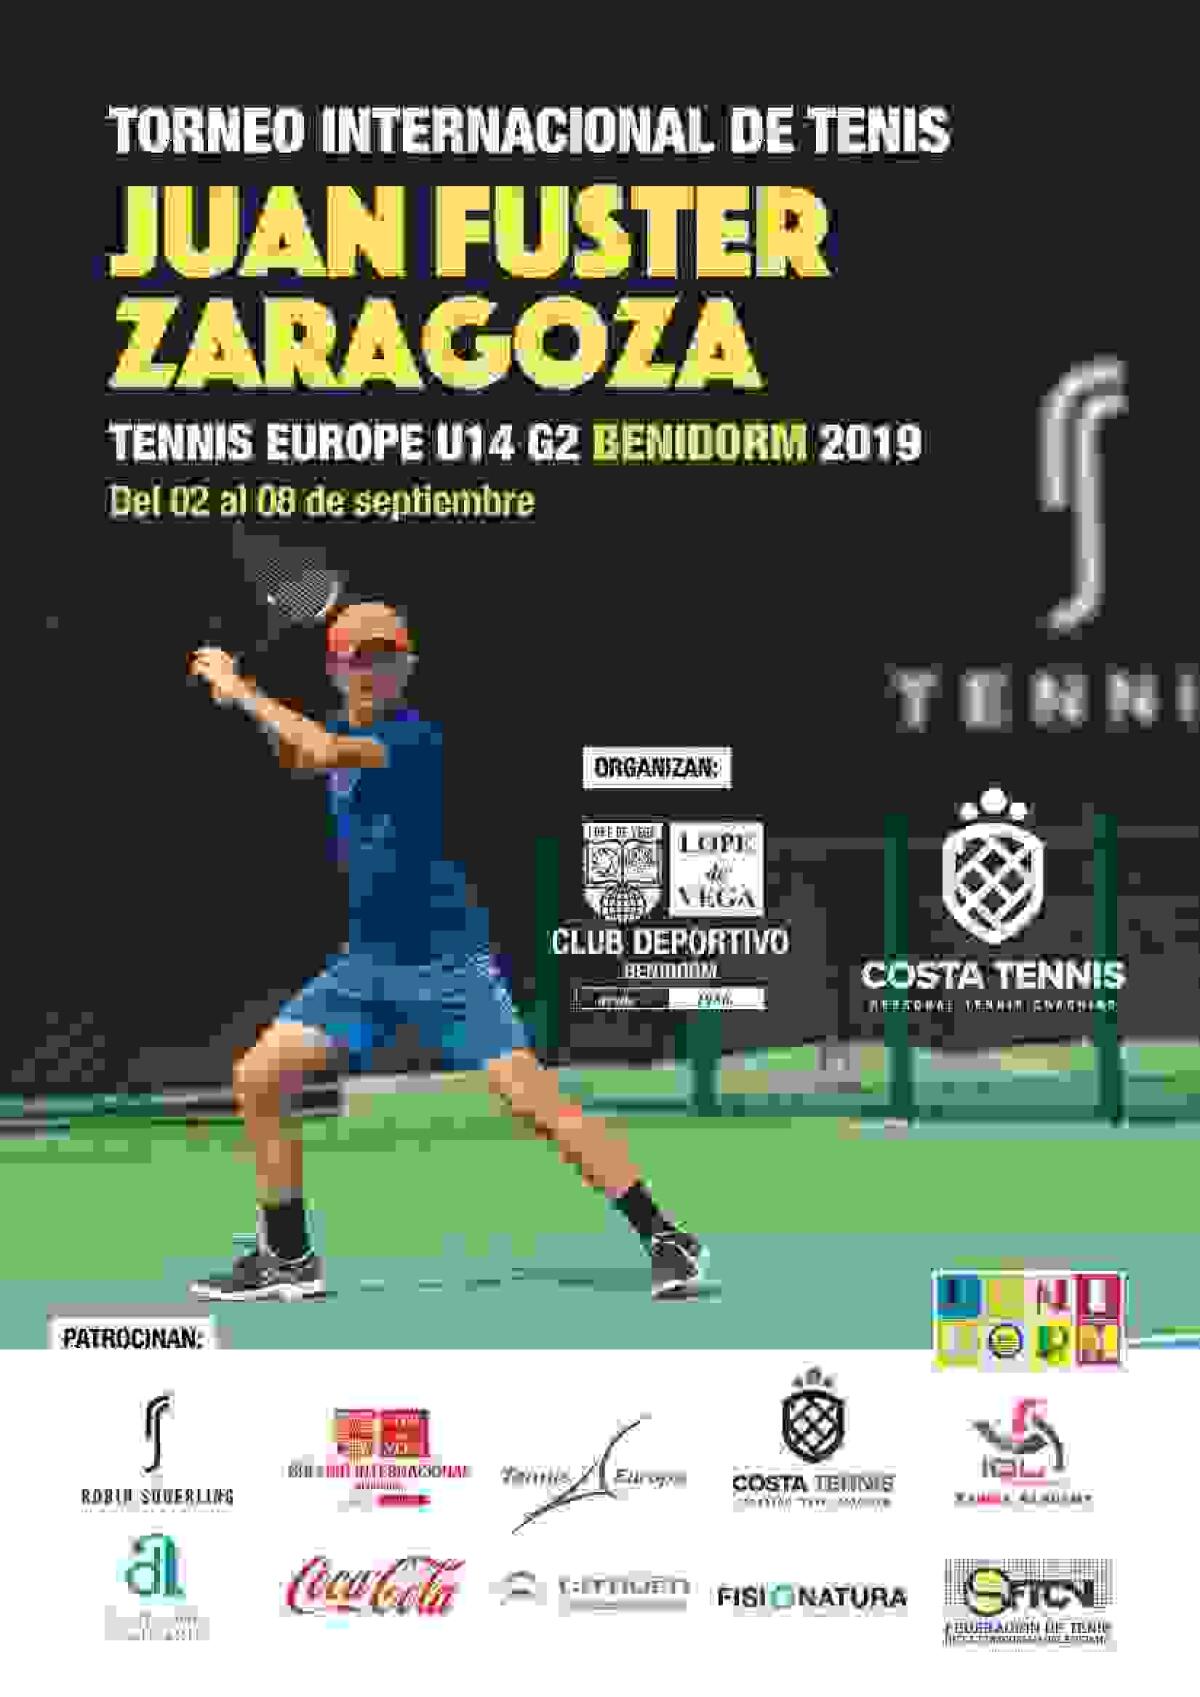 El Torneo Internacional de Tenis Juan Fuster Zaragoza cumpe su X aniversario trayendo a las grandes promesas del tenis mundial